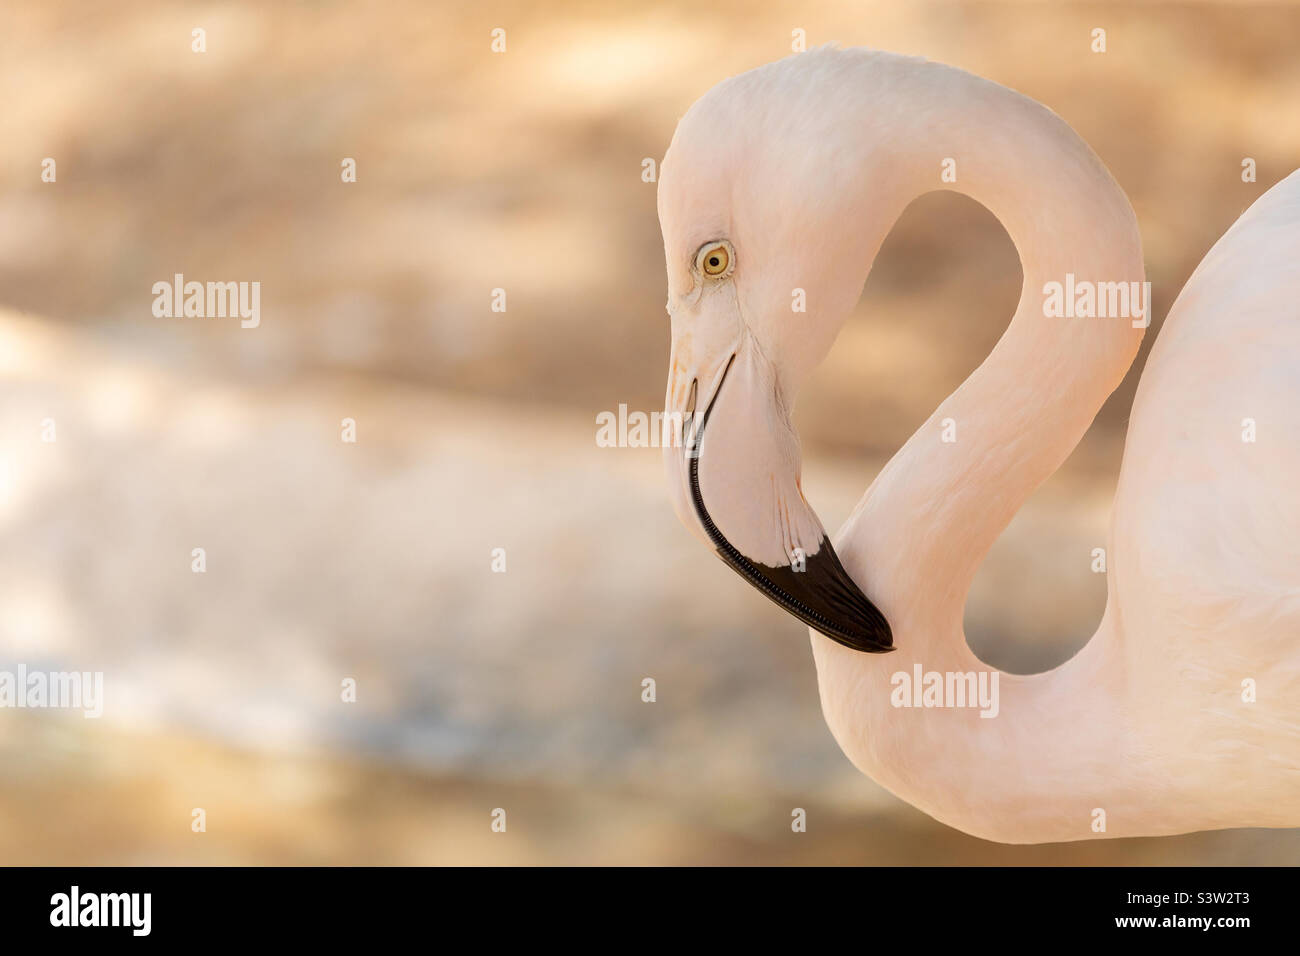 Great flamingo portrait Stock Photo